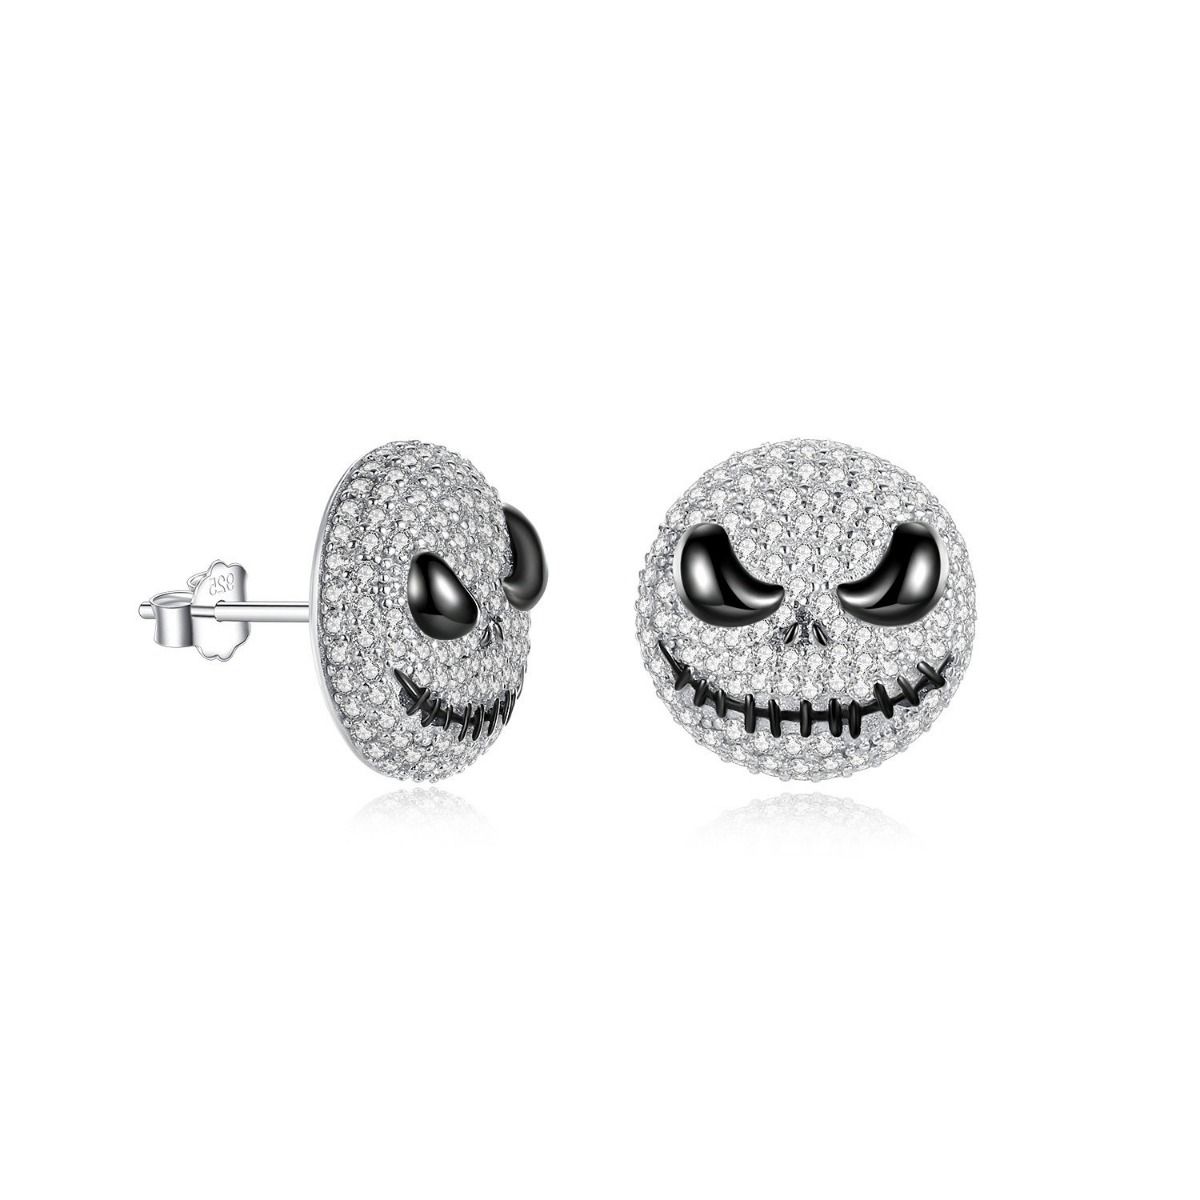 Two Ways Wear Halloween Skull Earrings In Sterling Silver